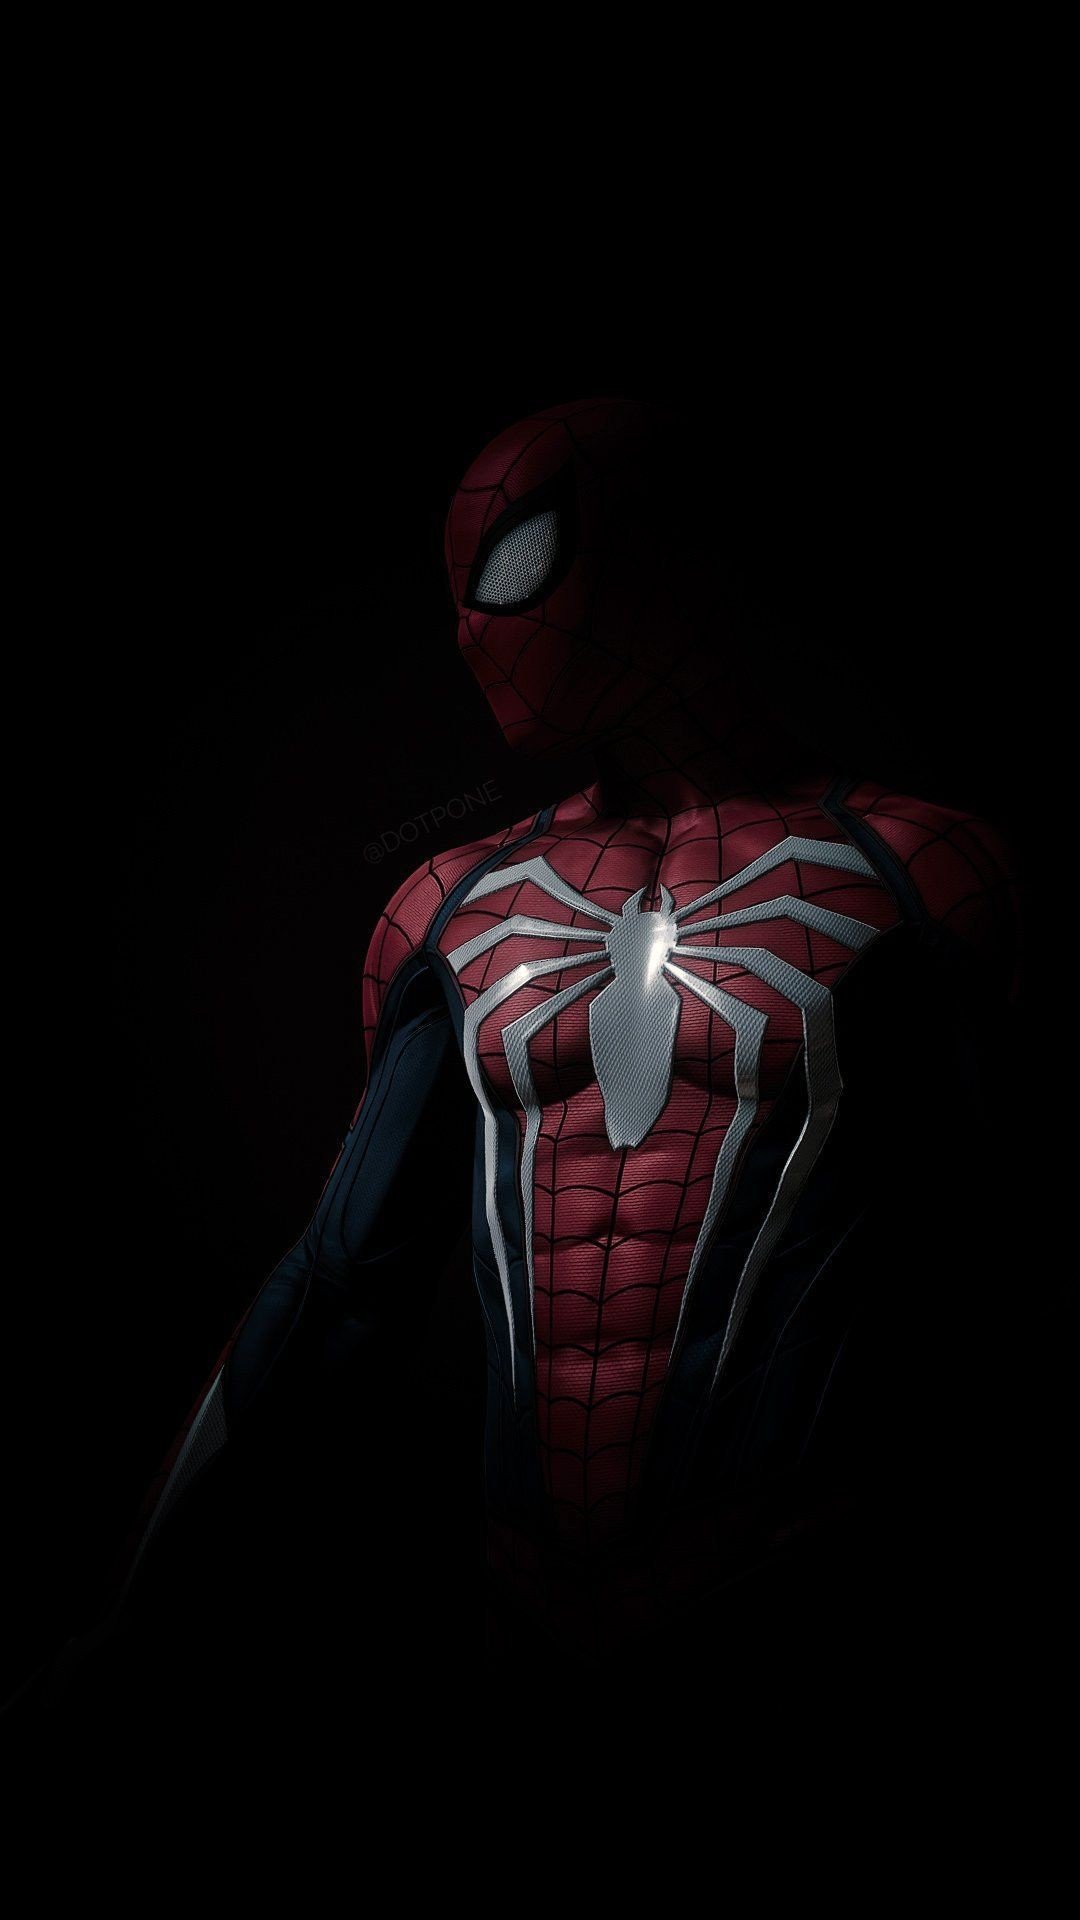 Dark Marvel's Spider-Man